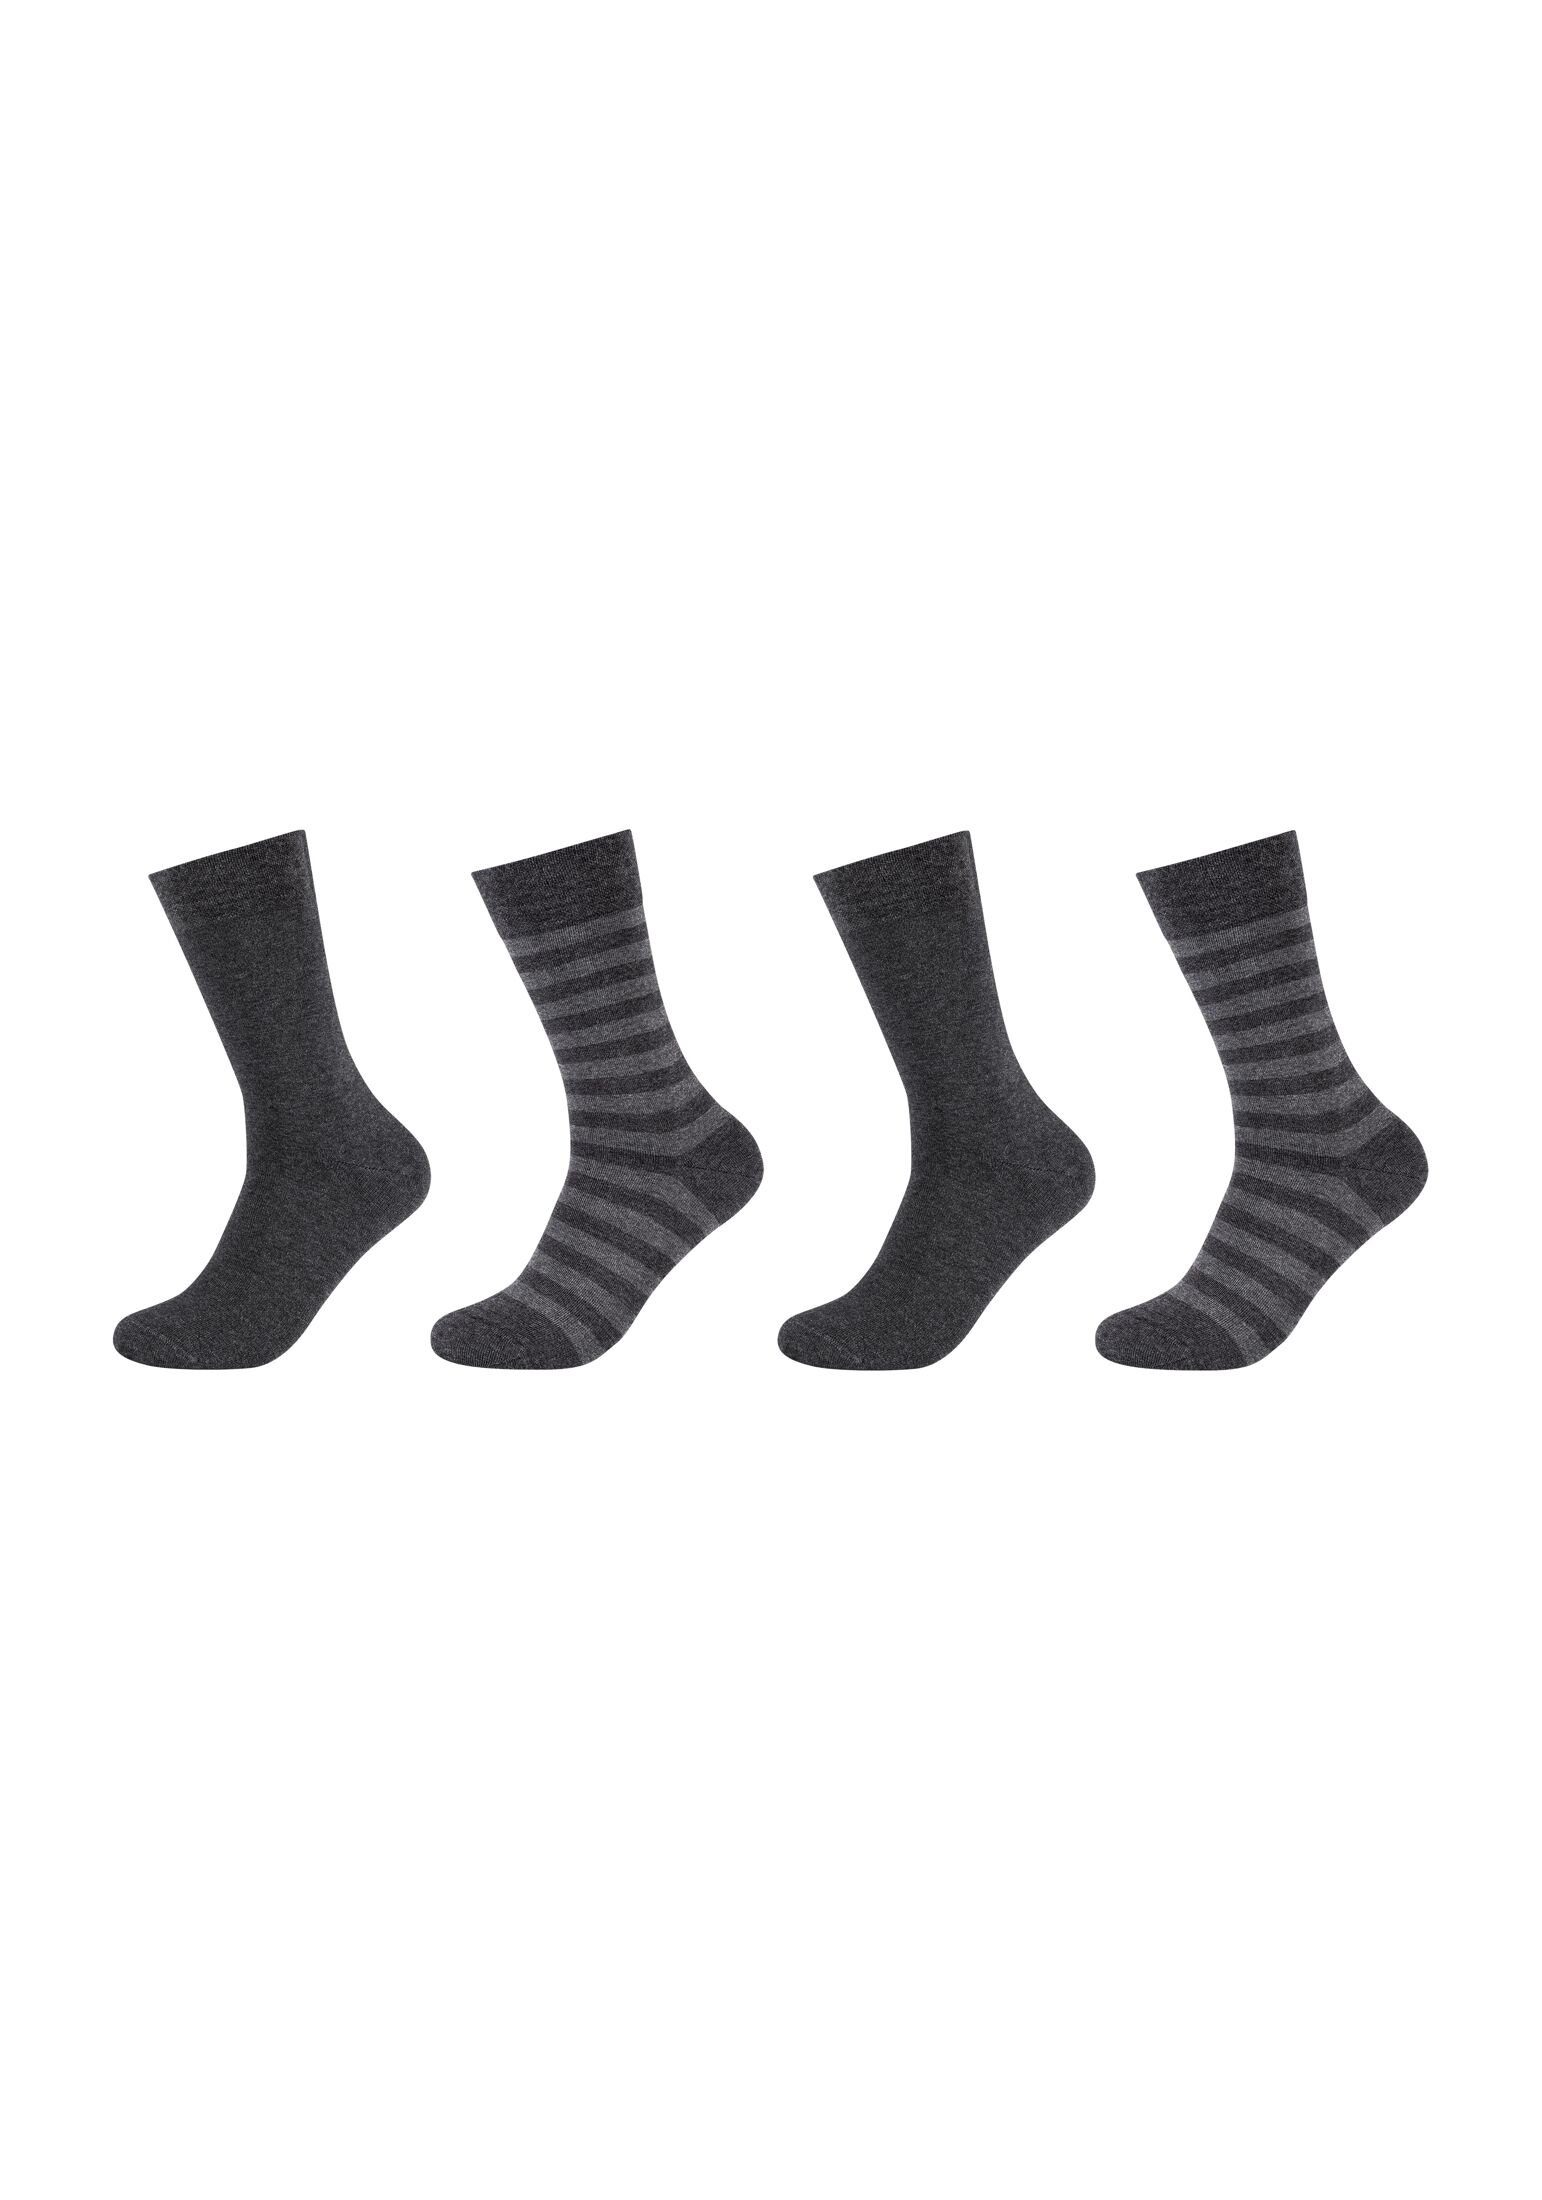 Camano Socken Socken melange 4er Pack anthracite